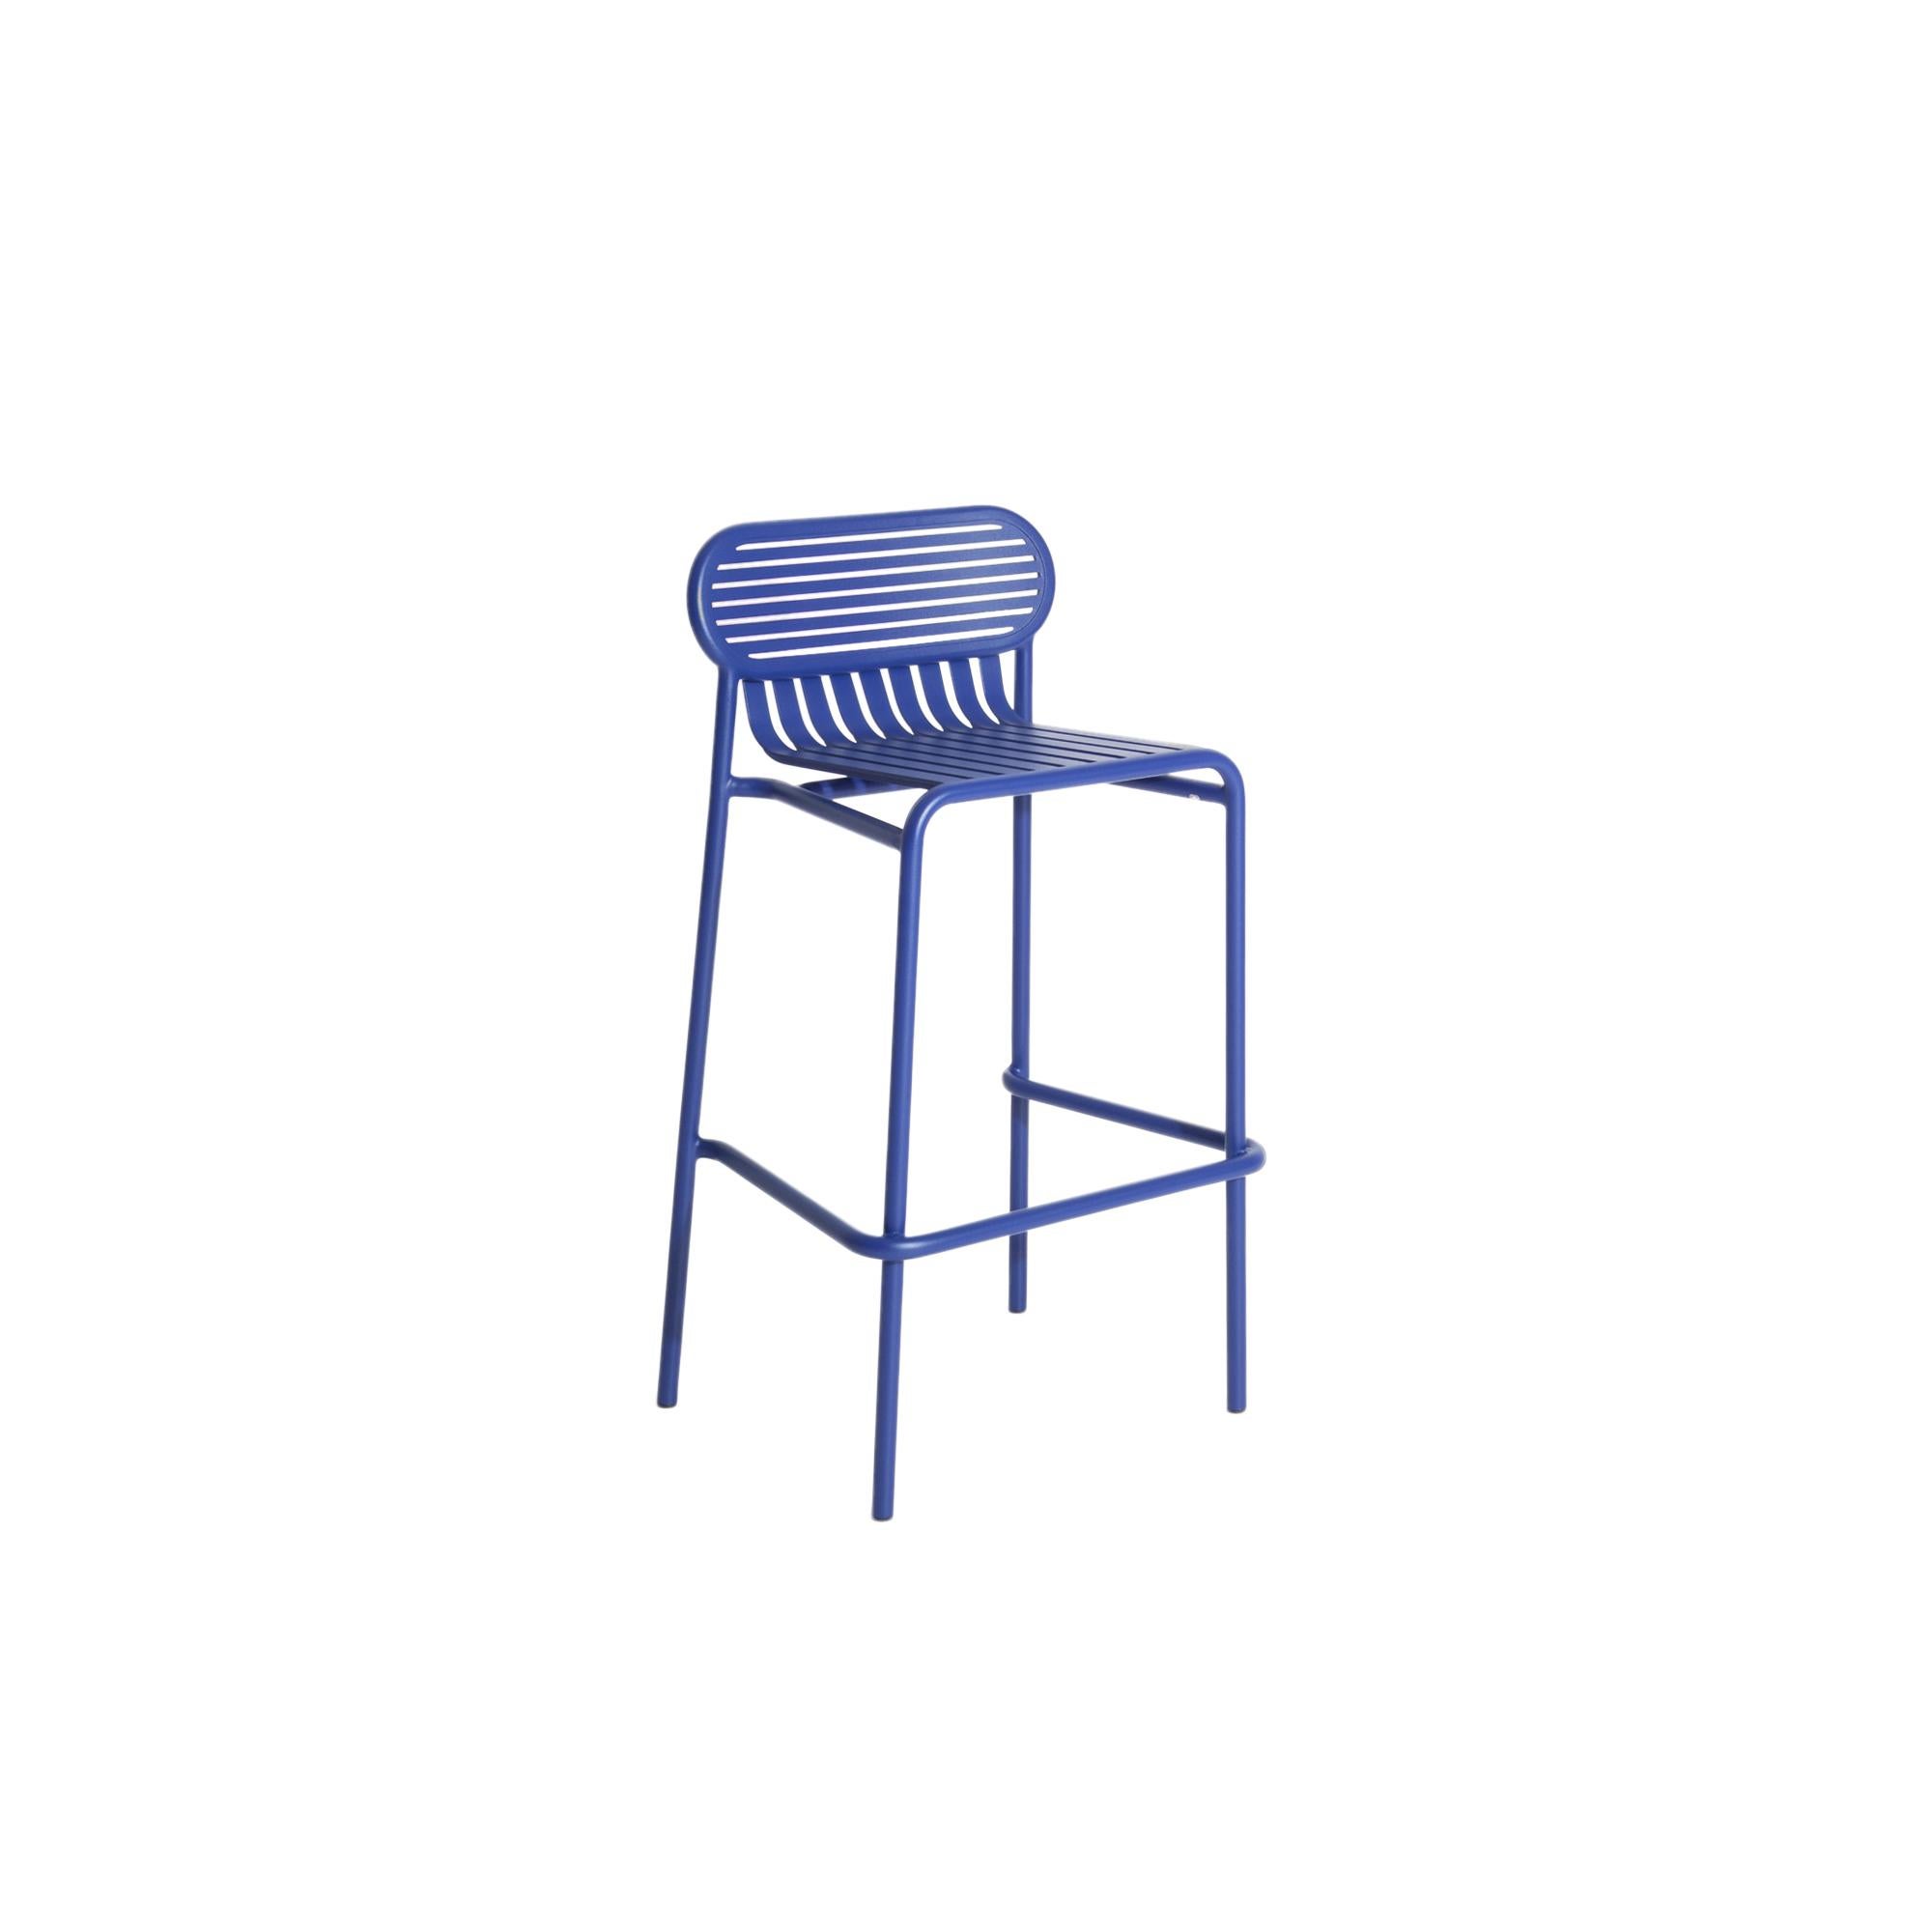 Tabouret de bar Week-End Petite Friture en aluminium bleu par Studio BrichetZiegler, 2017.

La collection week-end est une gamme complète de mobilier d'extérieur, en peinture époxy aluminium grainé, finition mate, qui comprend 18 fonctions et 8